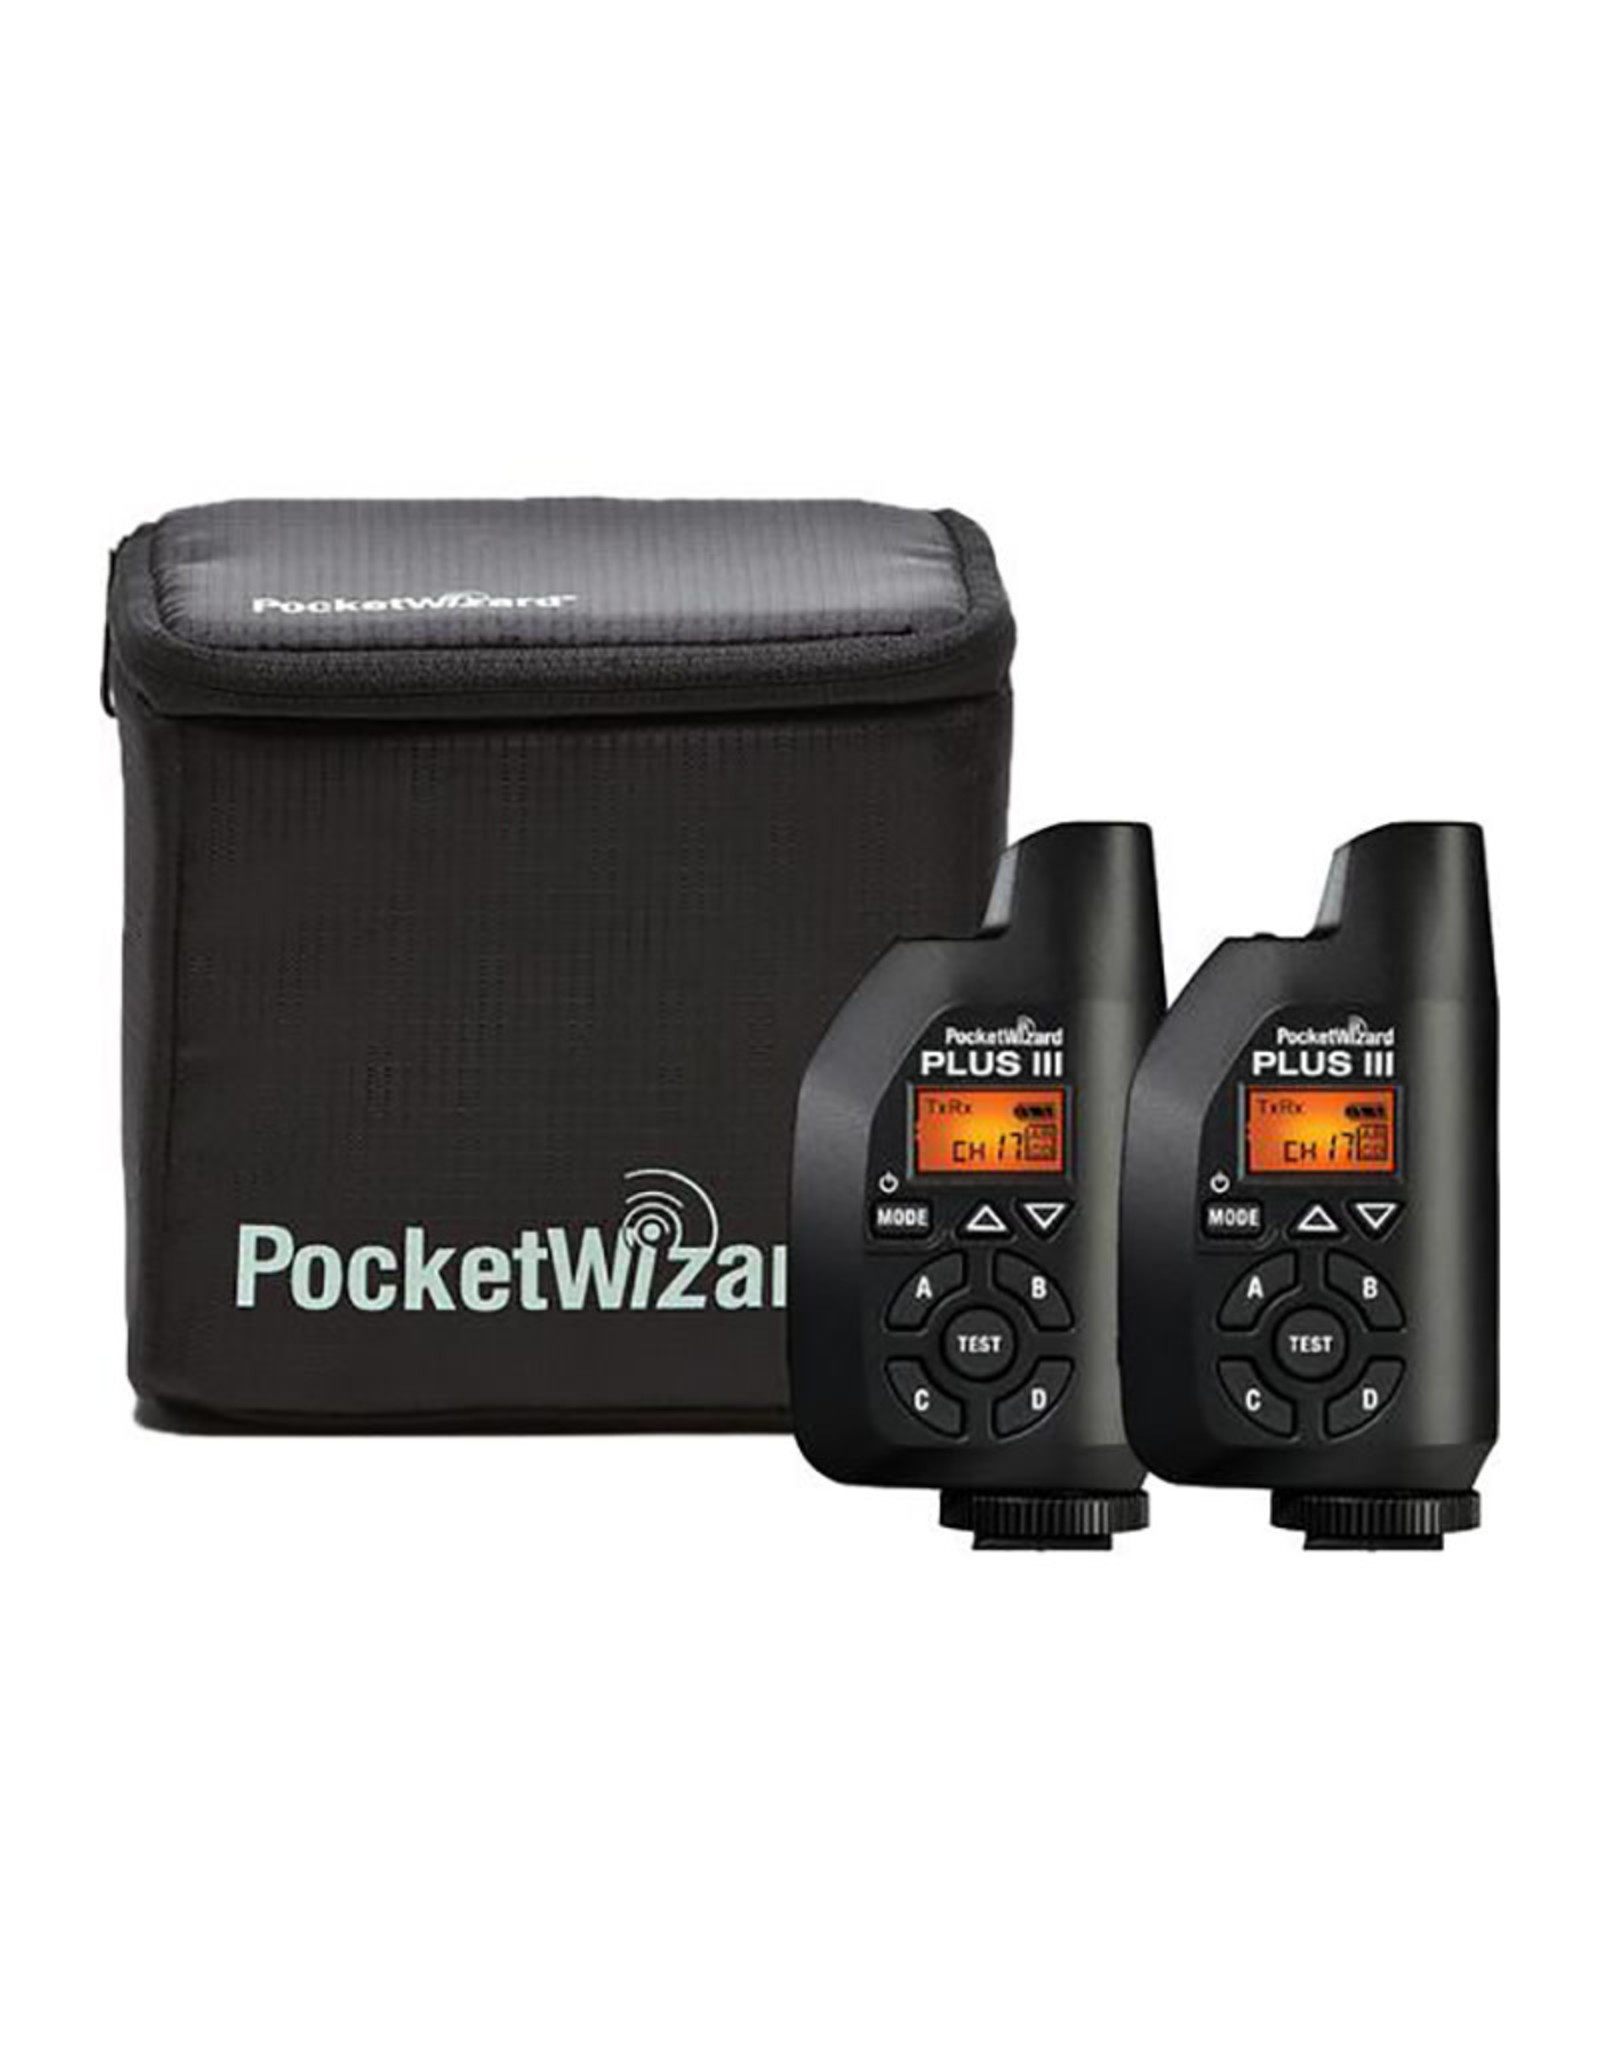 Pocket Wizard Pocket Wizard Plus IIIe Kit